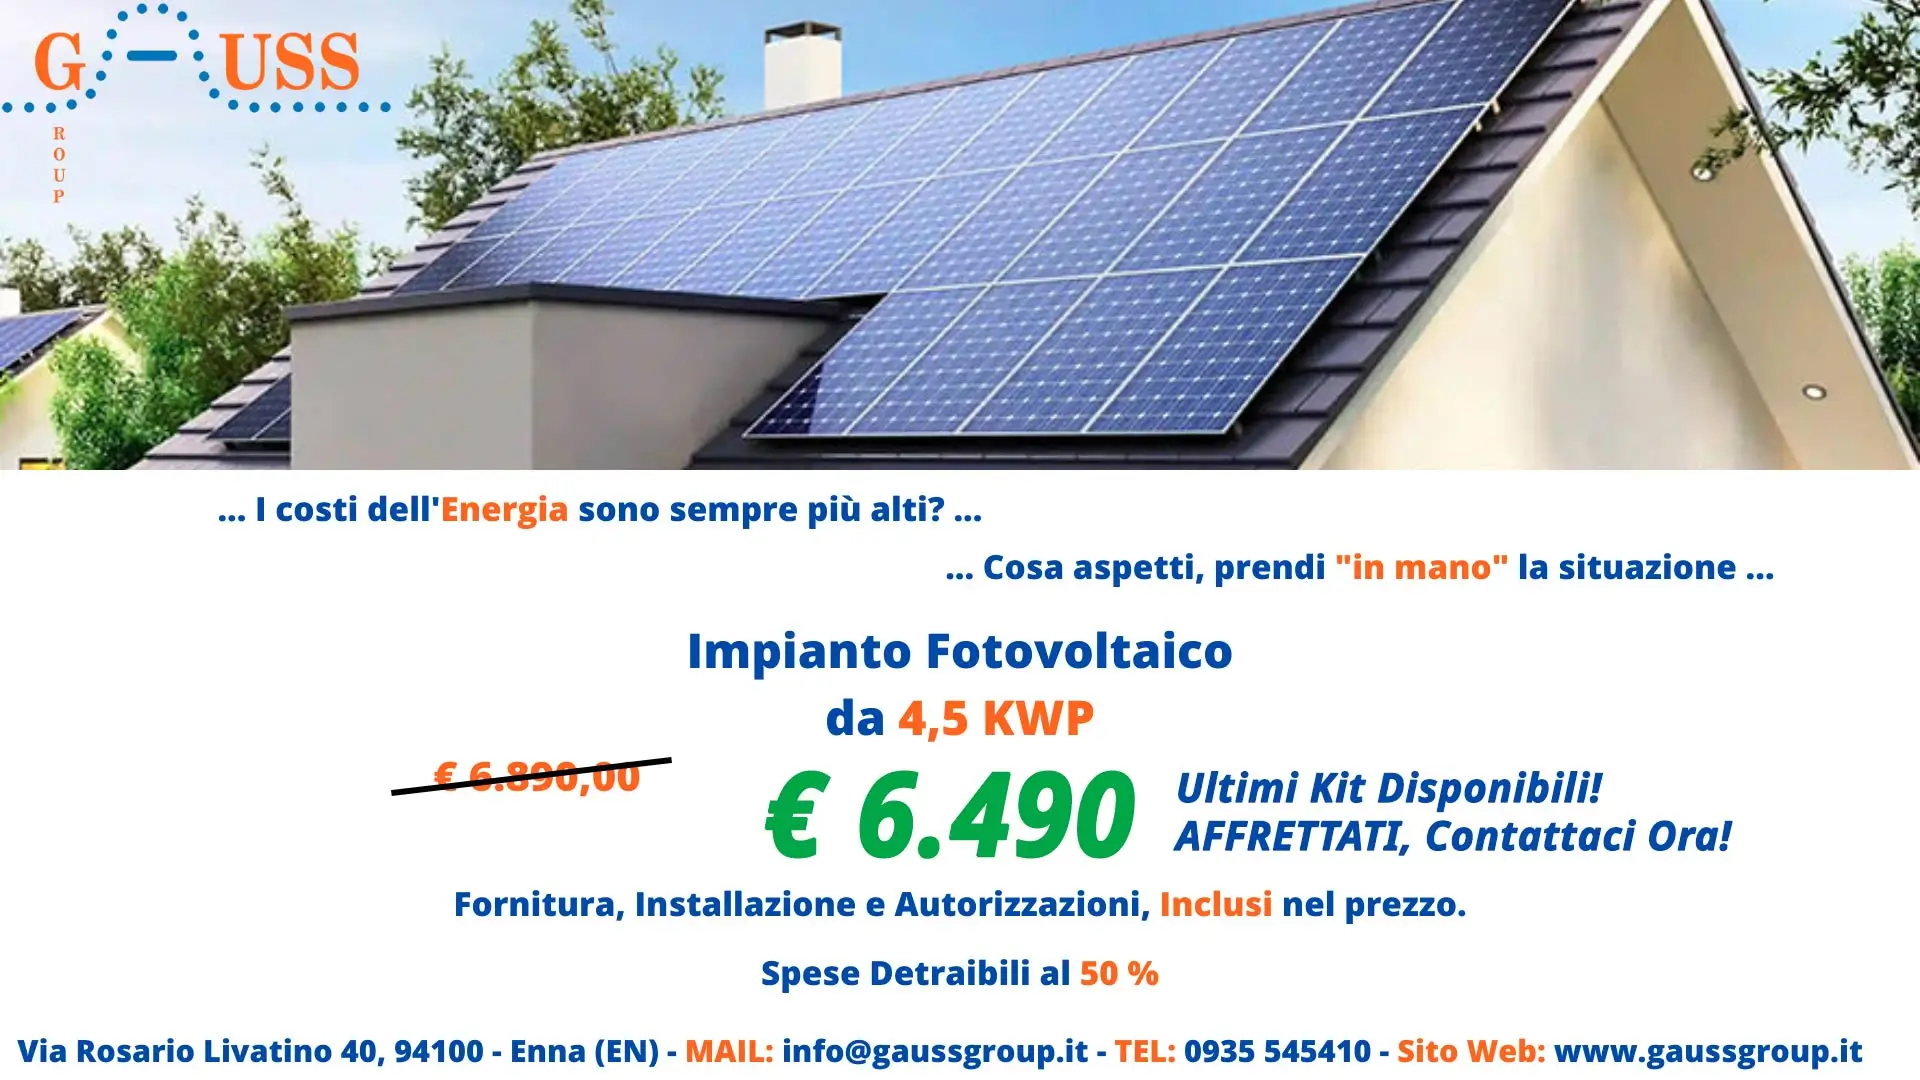 Promozione impianto fotovoltaico 4,5kwp